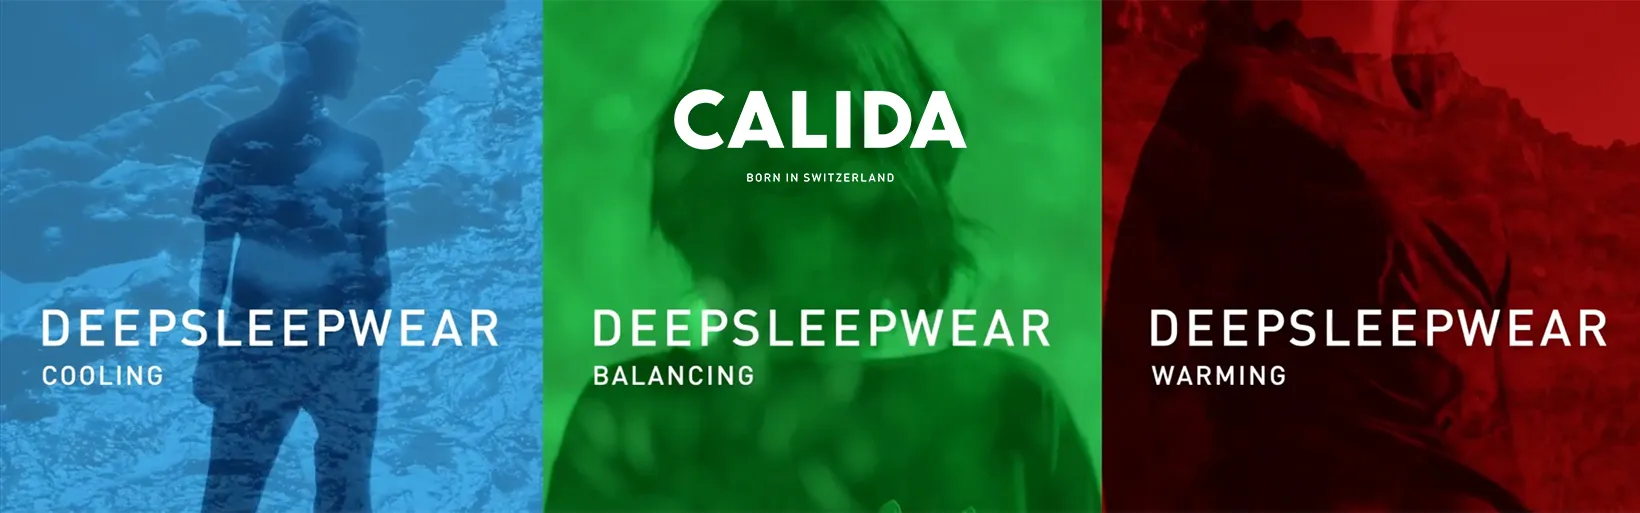 Calida Deep Sleep Wear